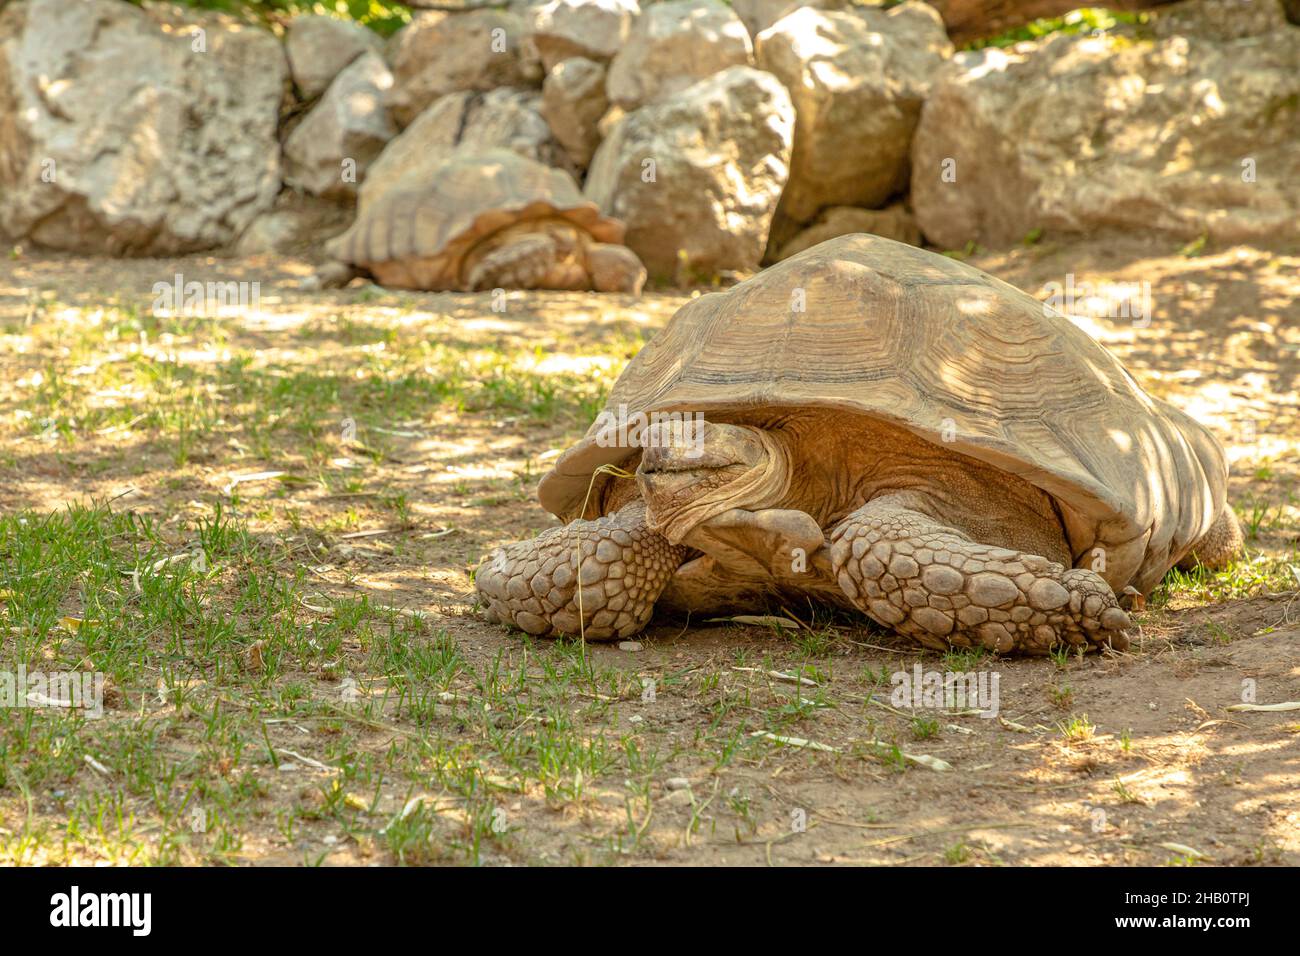 Tortue: Une tortue africaine poussée marche sur l'herbe.Espèces de Centrochelys sulcata de la famille des Testudinidae.Adultes de tortues terrestres indigènes de la Banque D'Images